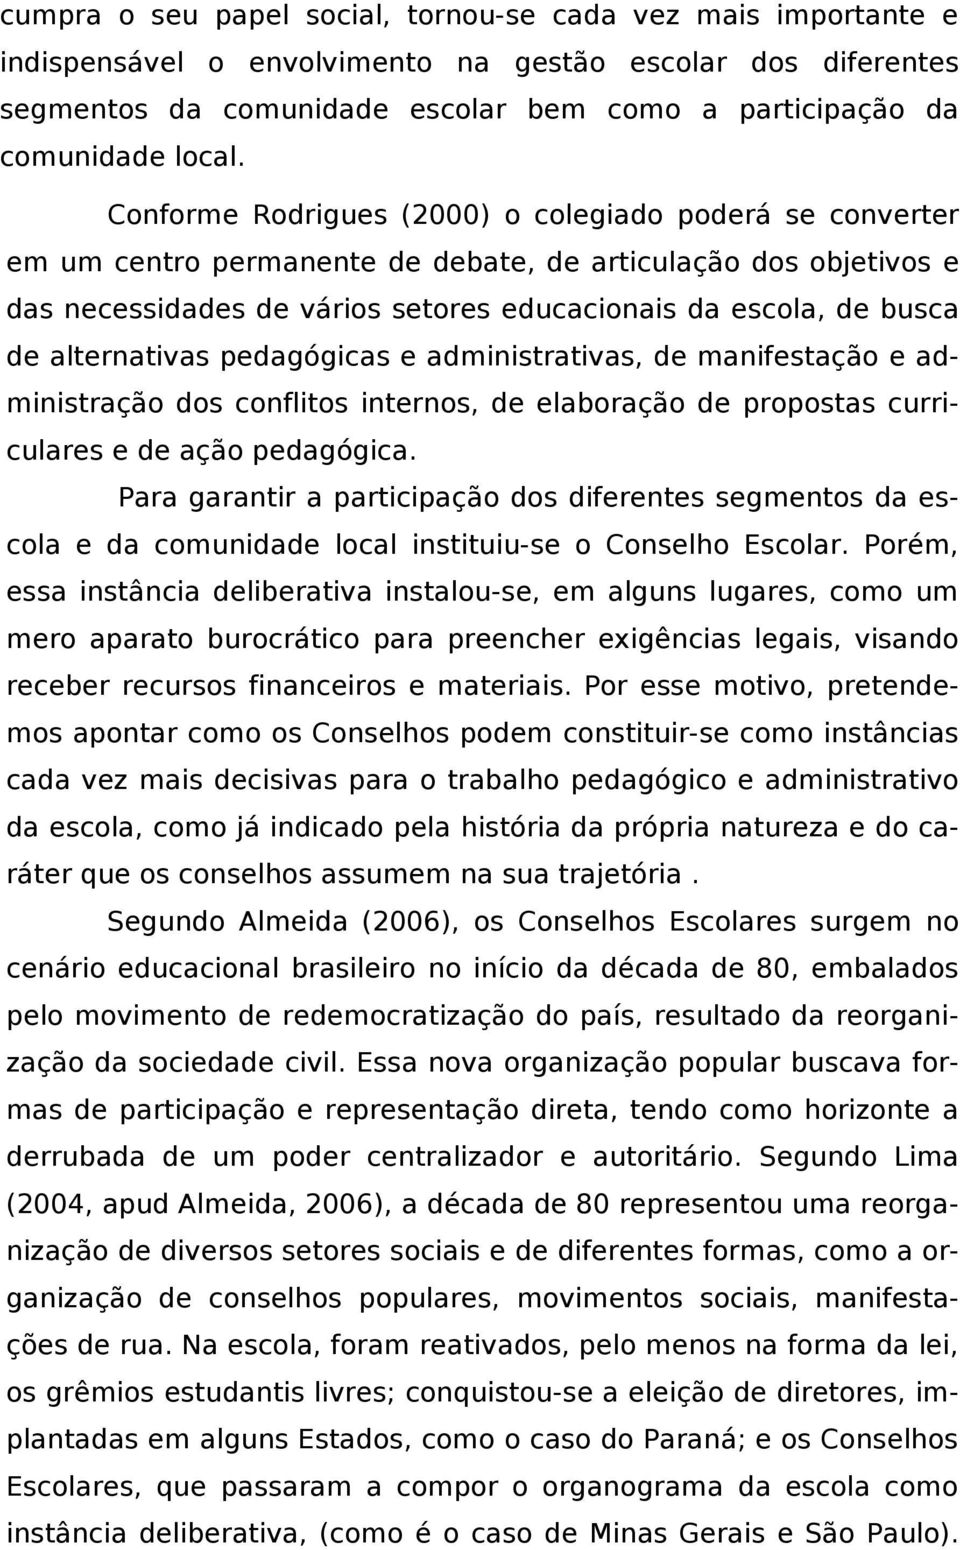 Conforme Rodrigues (2000) o colegiado poderá se converter em um centro permanente de debate, de articulação dos objetivos e das necessidades de vários setores educacionais da escola, de busca de